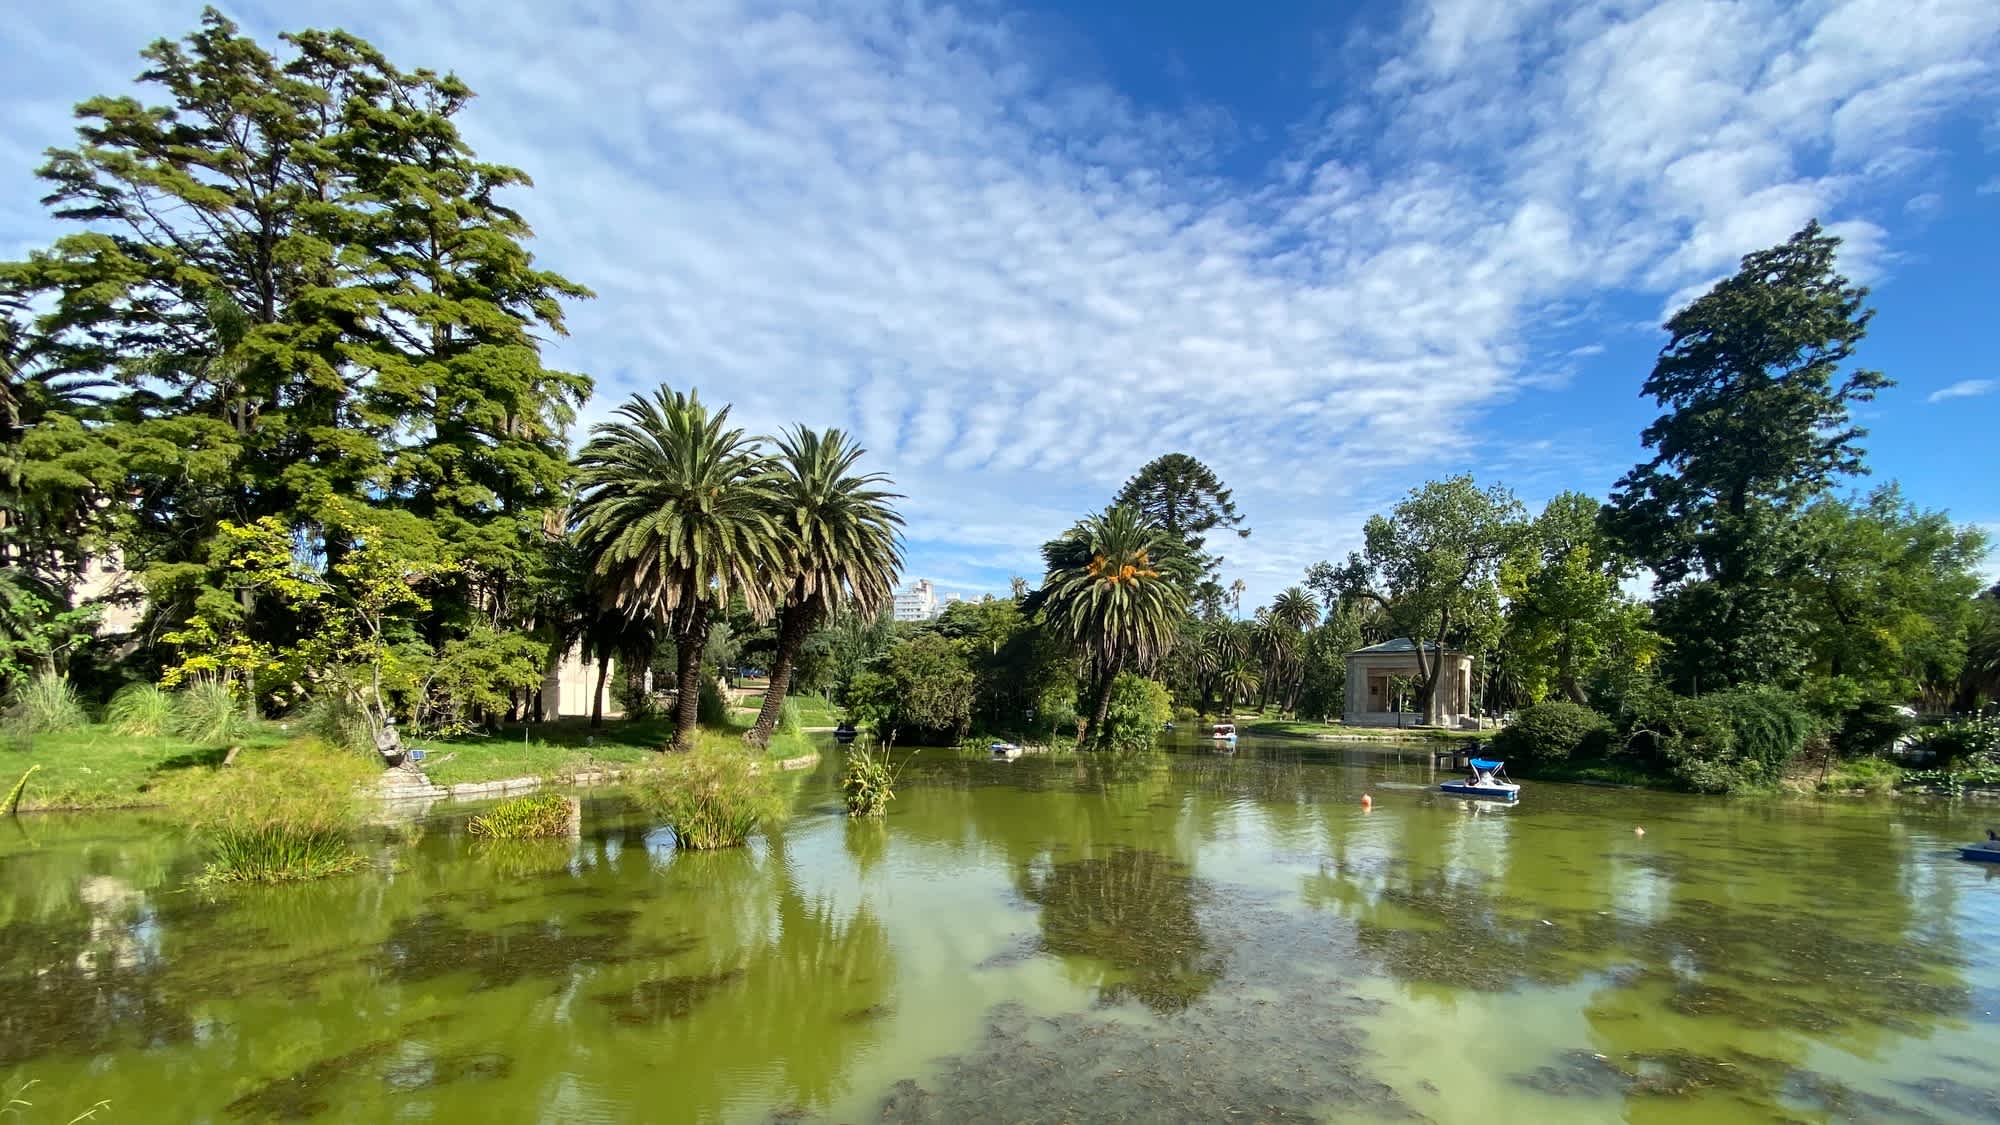 Lac à l'eau clair entouré de végétation, Parque Rodó à Montevideo, Uruguay

